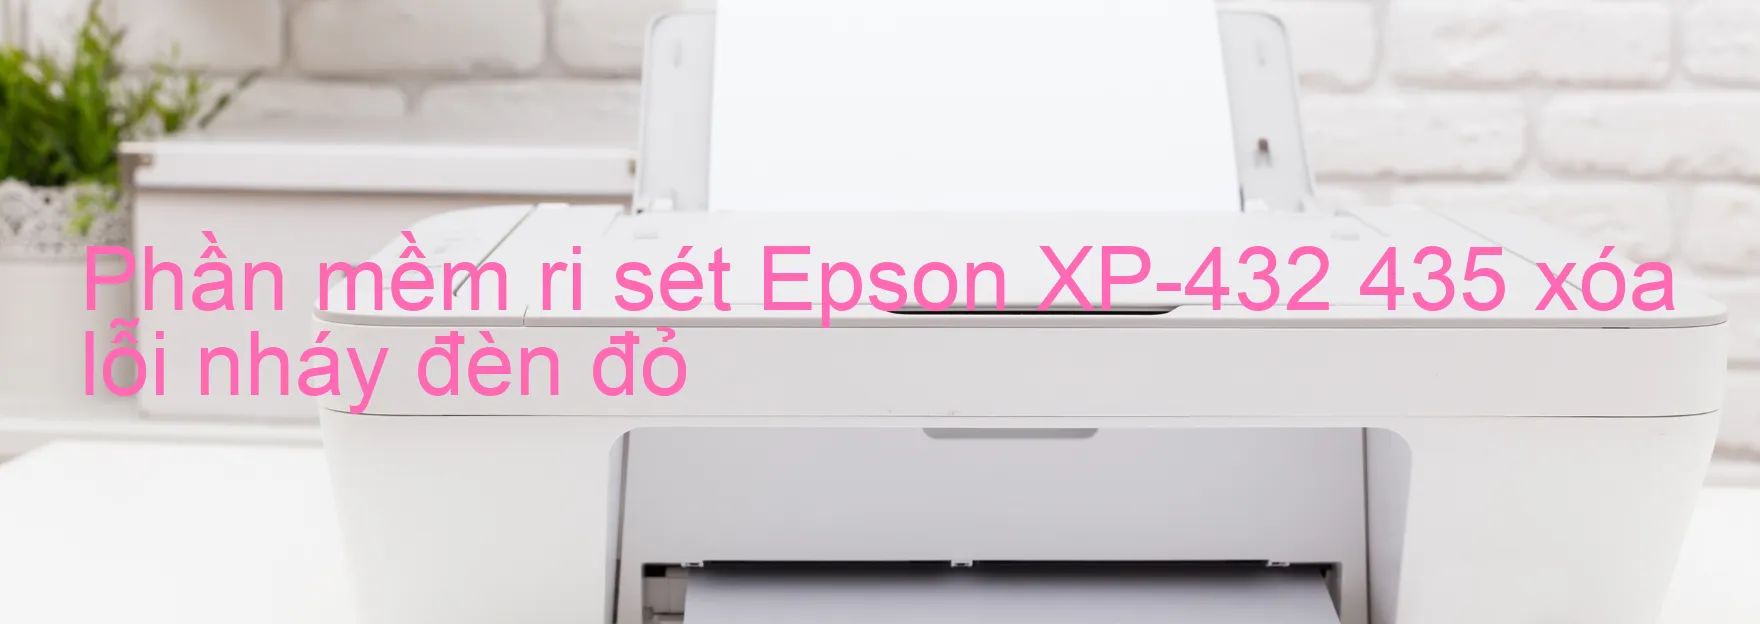 Phần mềm reset Epson XP-432 435 xóa lỗi nháy đèn đỏ